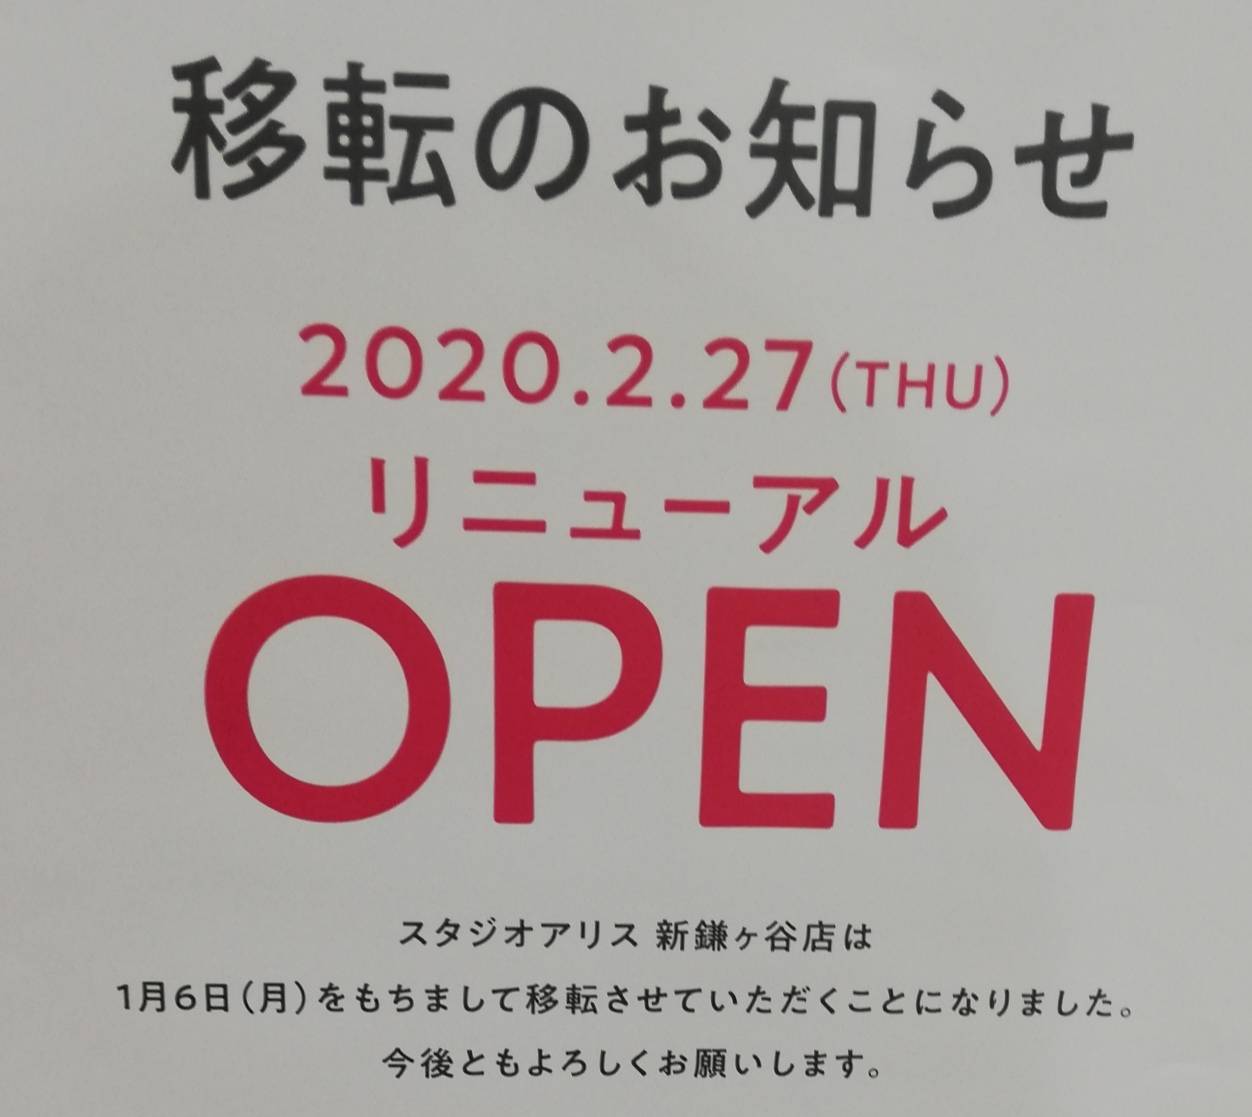 スタジオアリス新鎌ヶ谷店移転リニューアルオープン